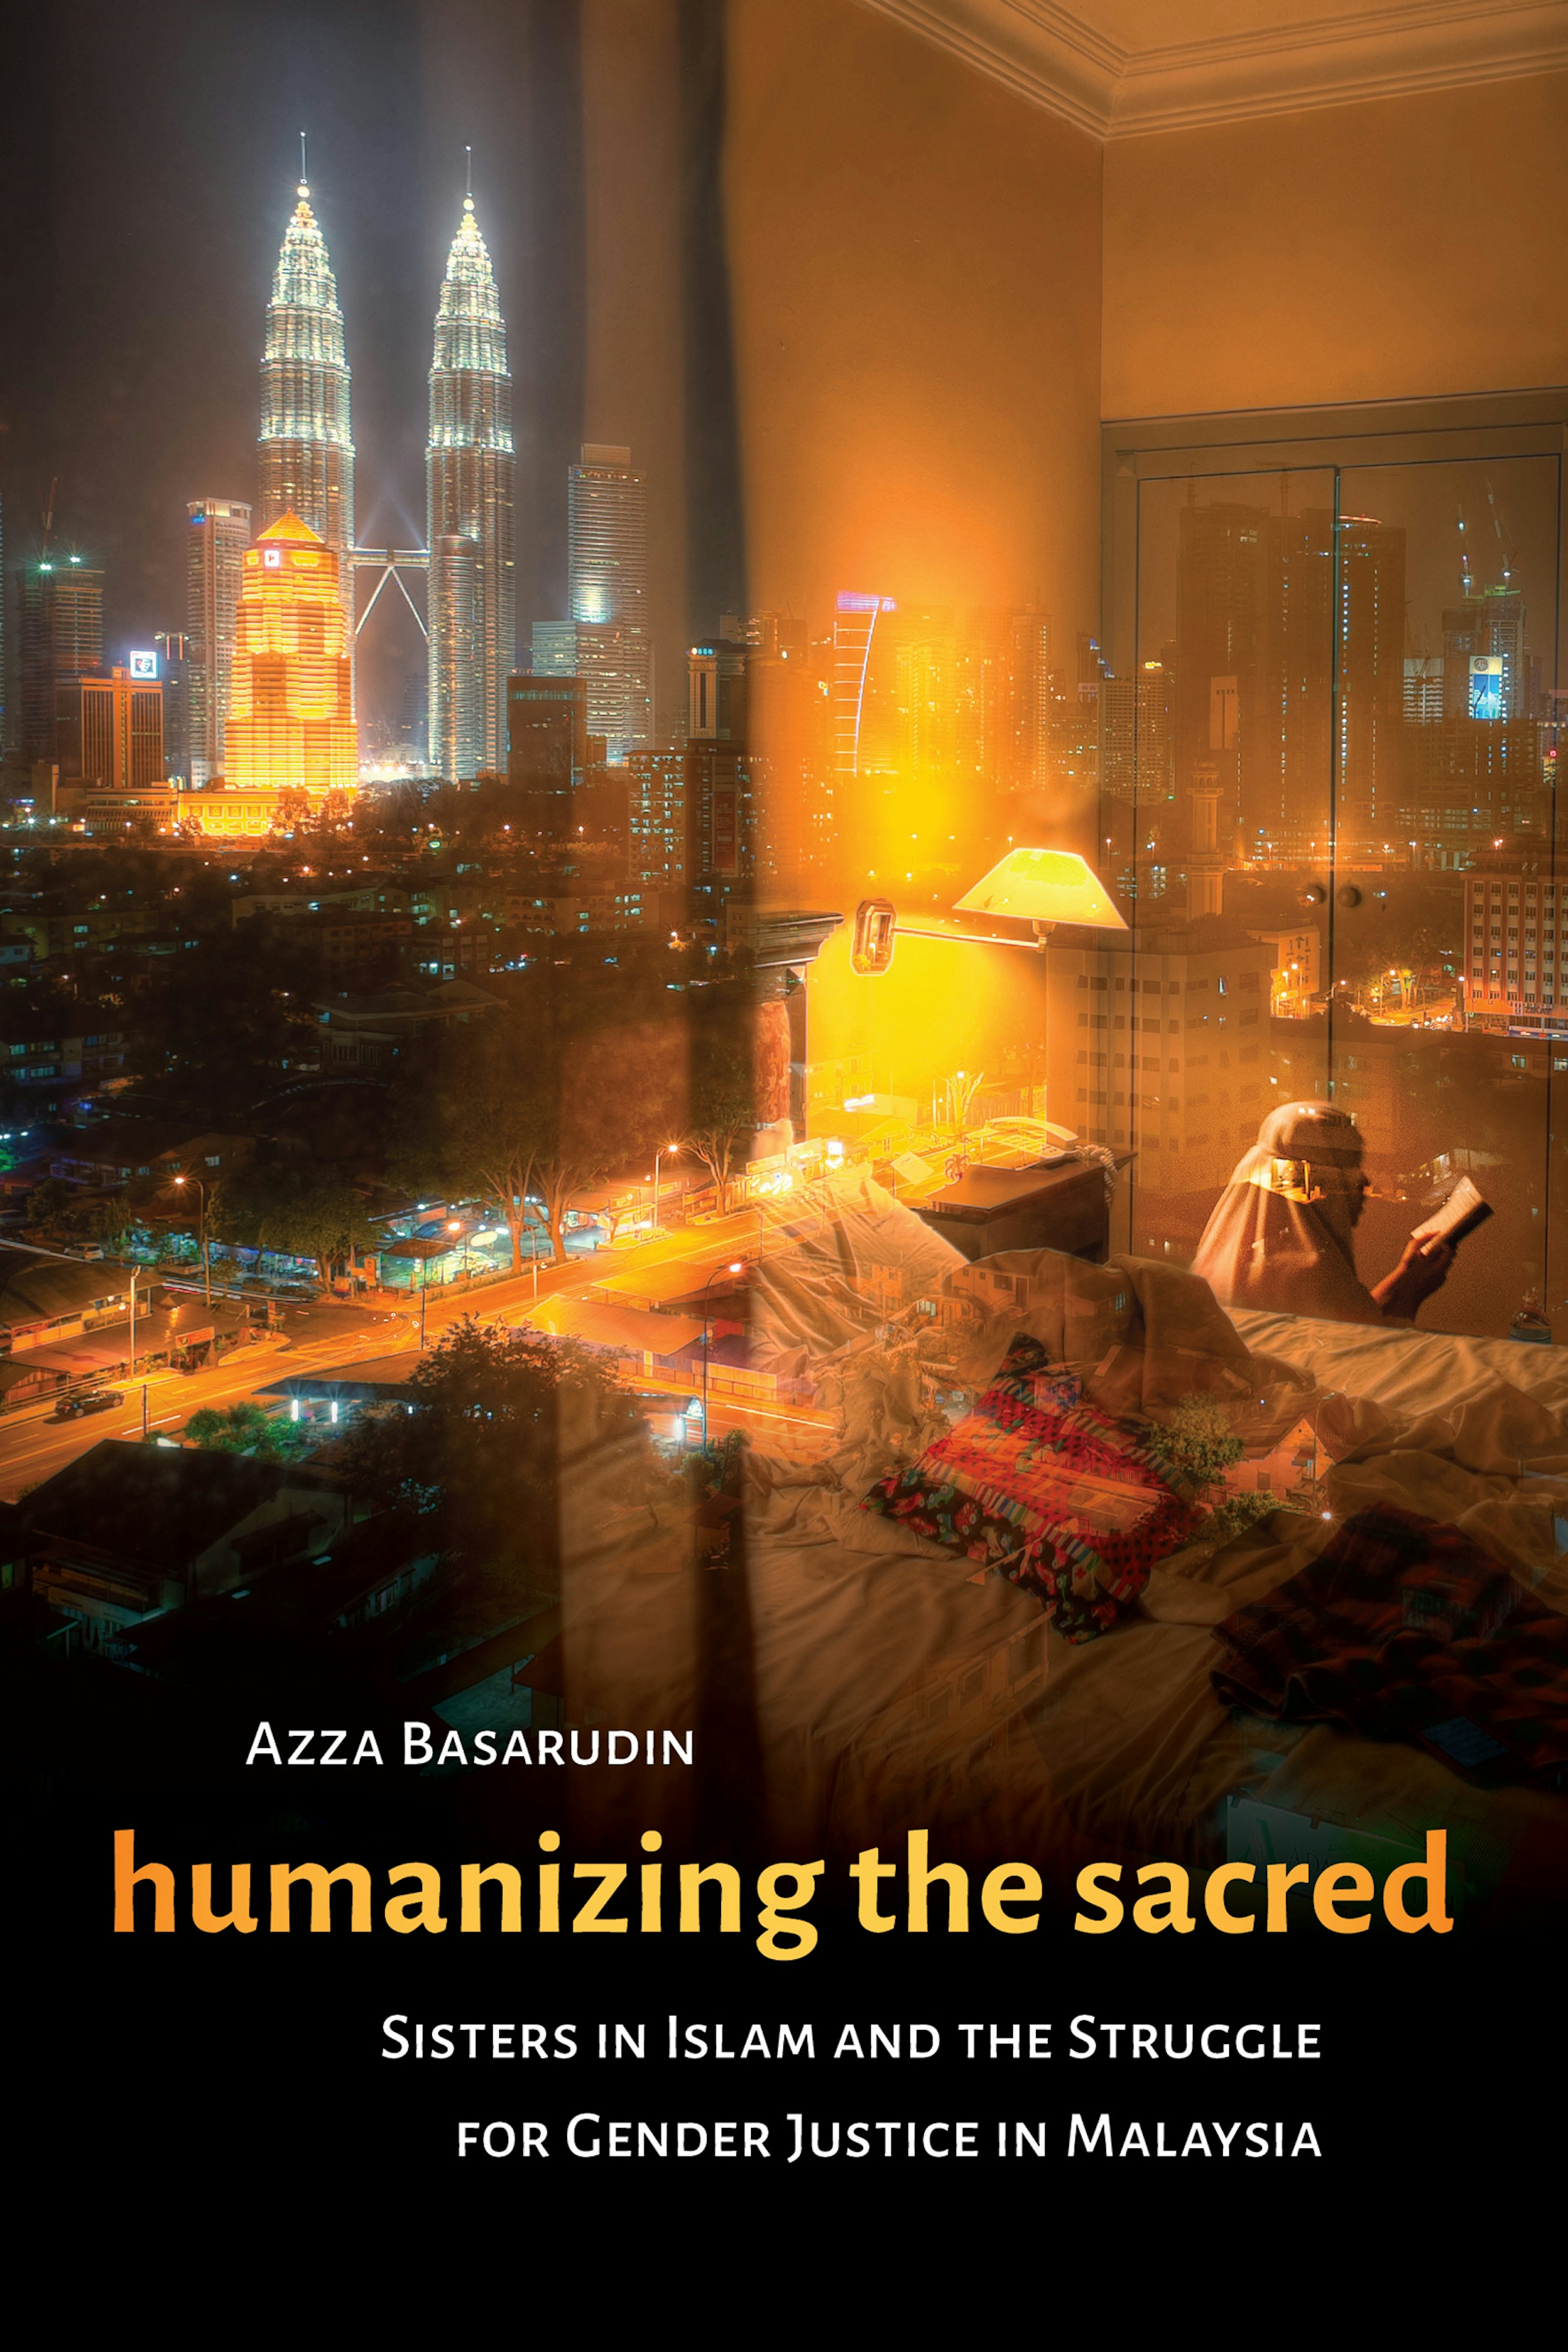 Humanizing the Sacred